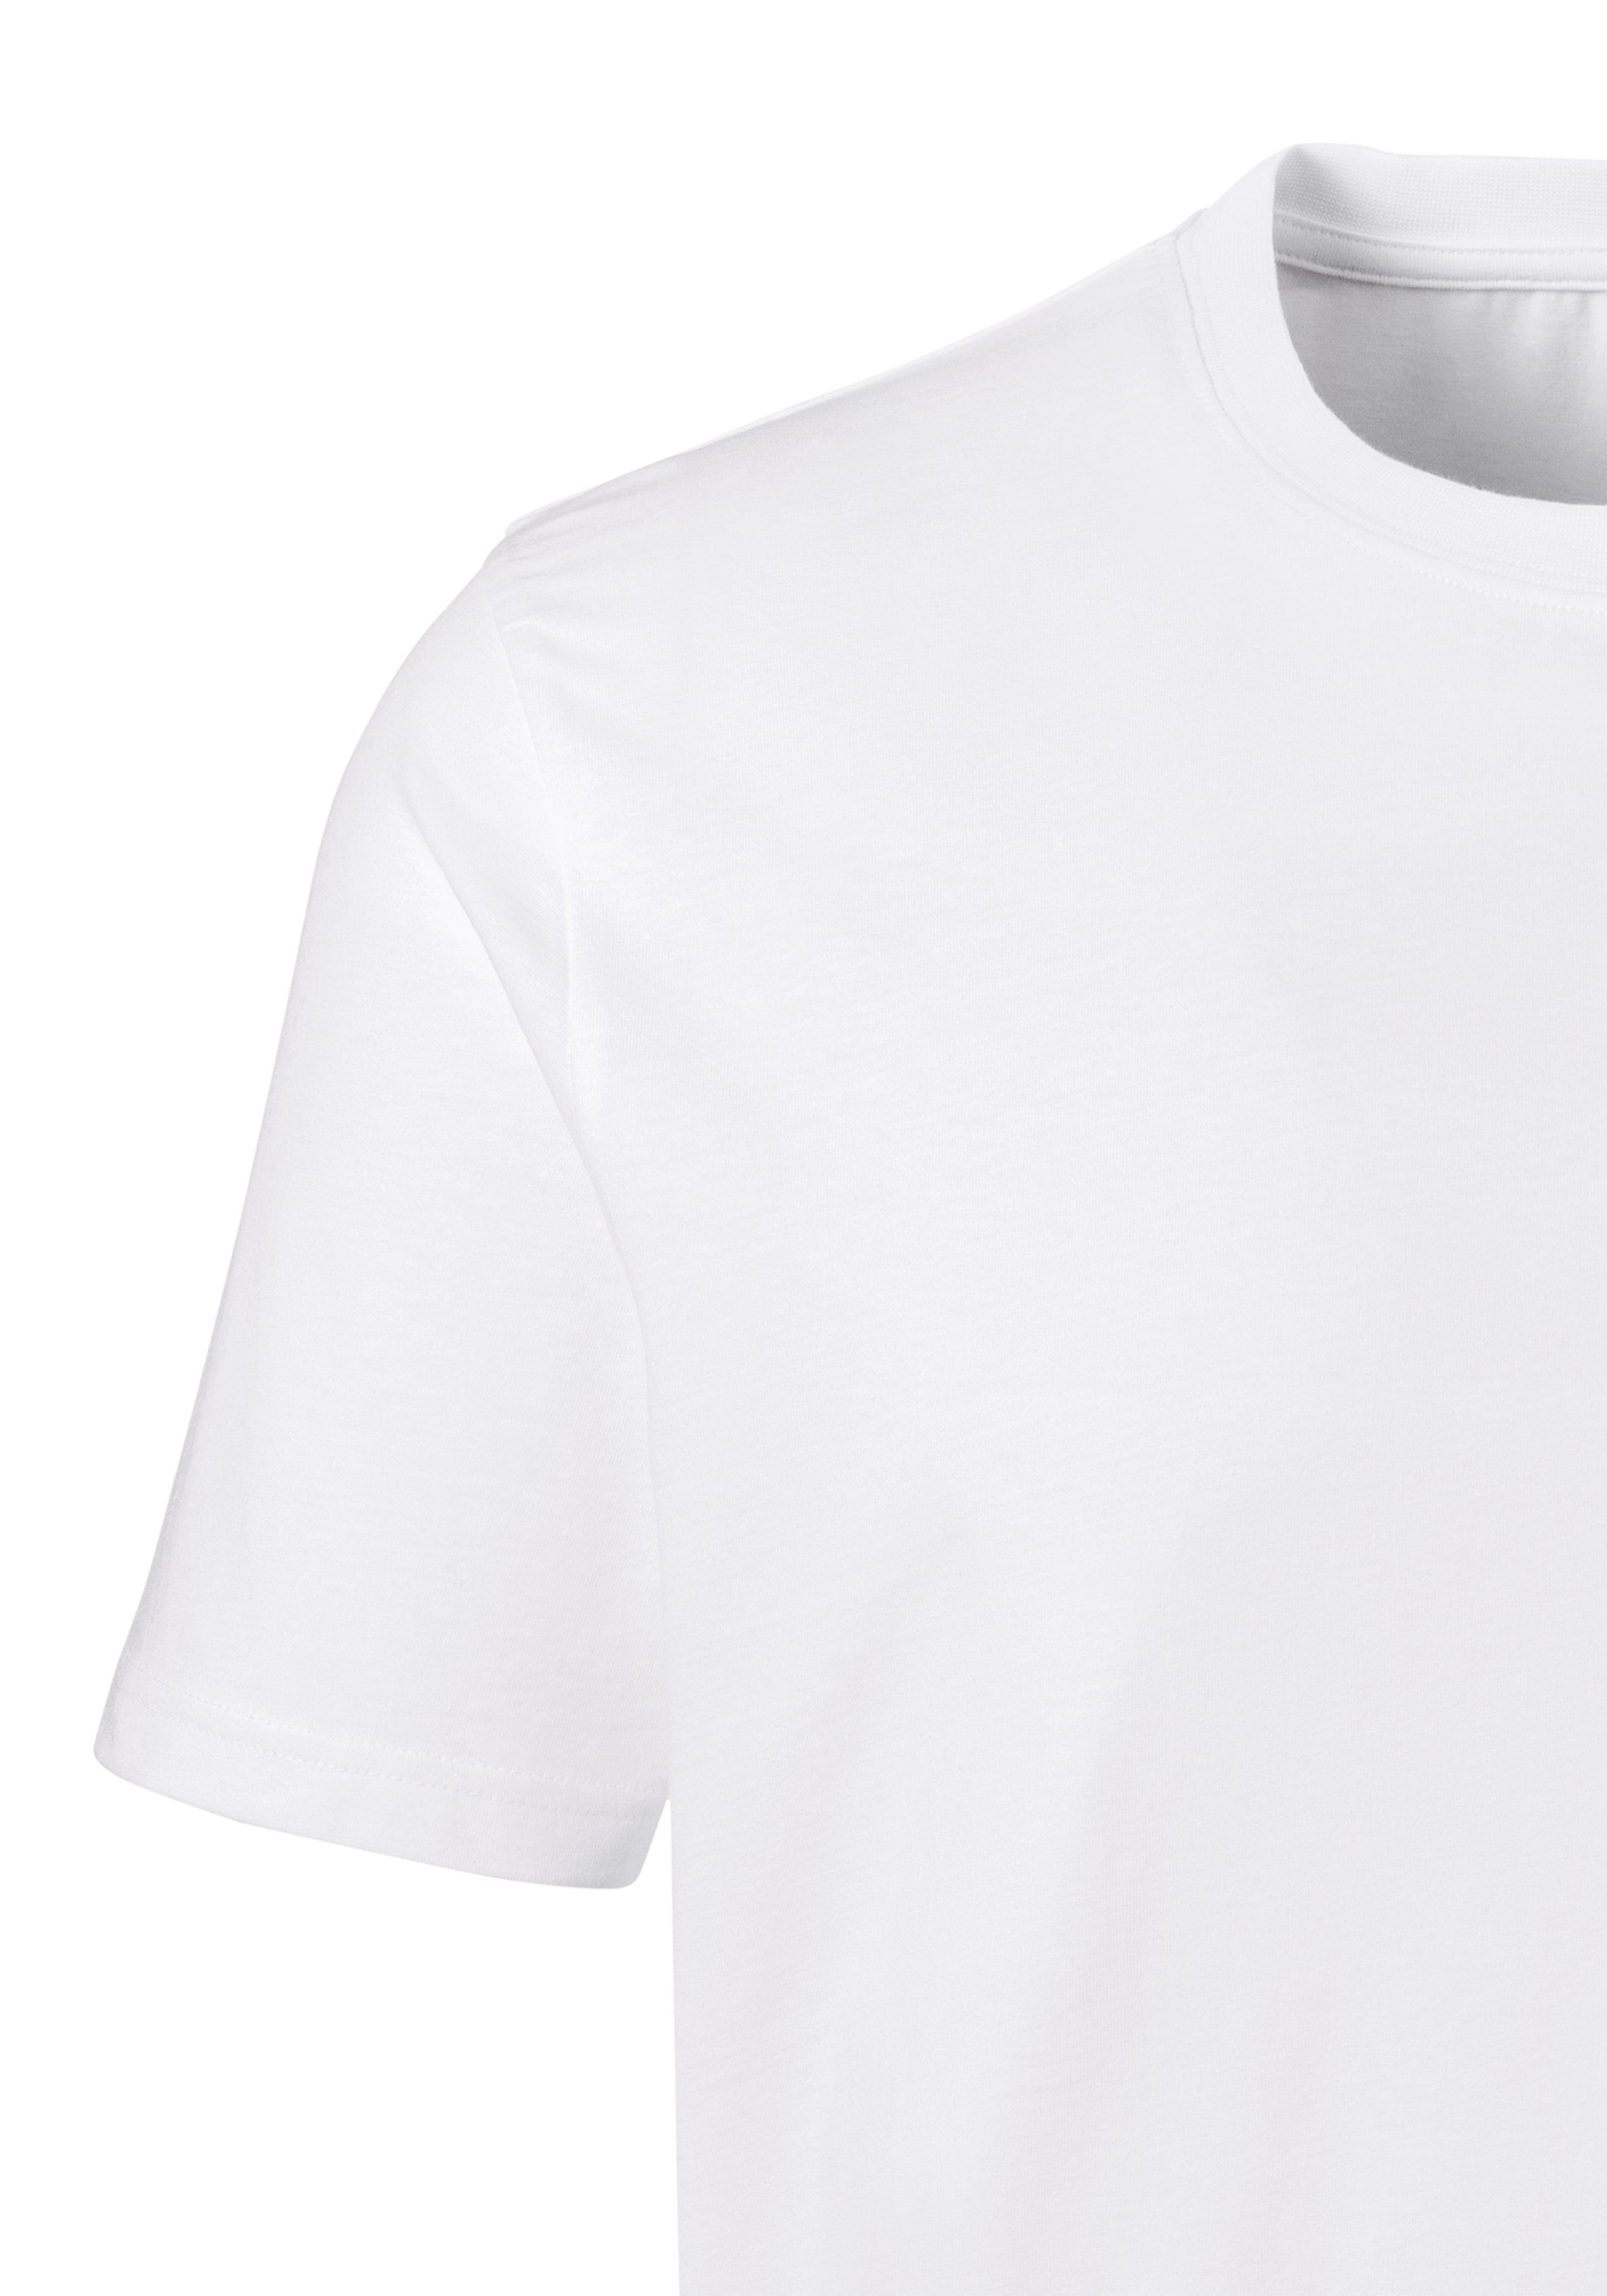 H.I.S Kurzarmshirt als (3er-Pack) Unterziehshirt perfekt weiß